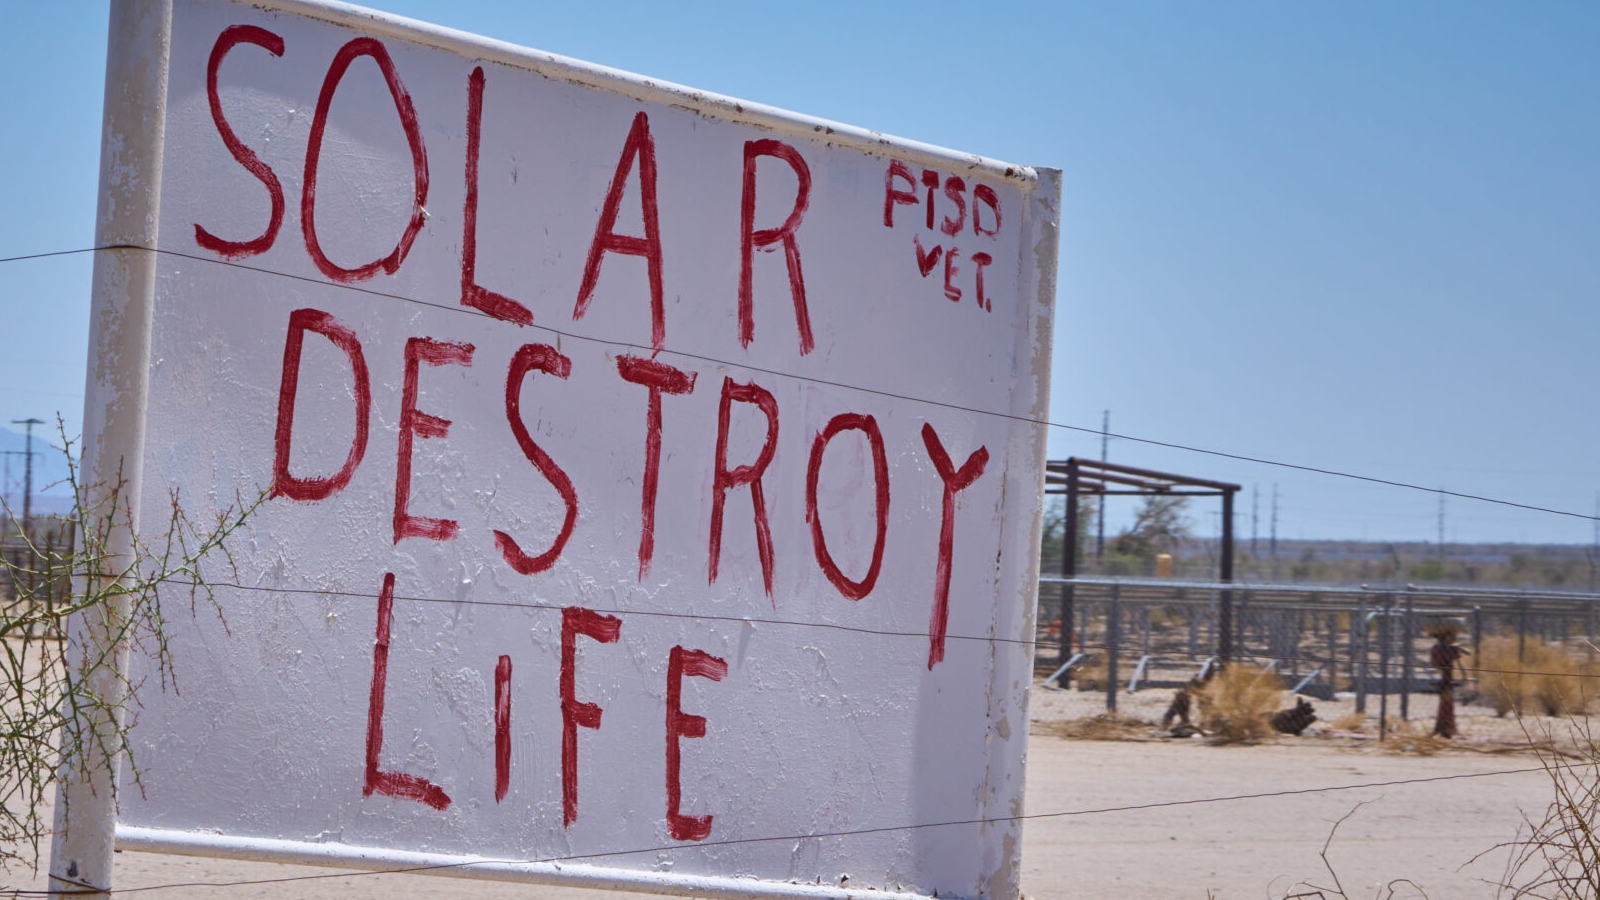 A sign that says Solar destroy life PTSD Vet in the desert.